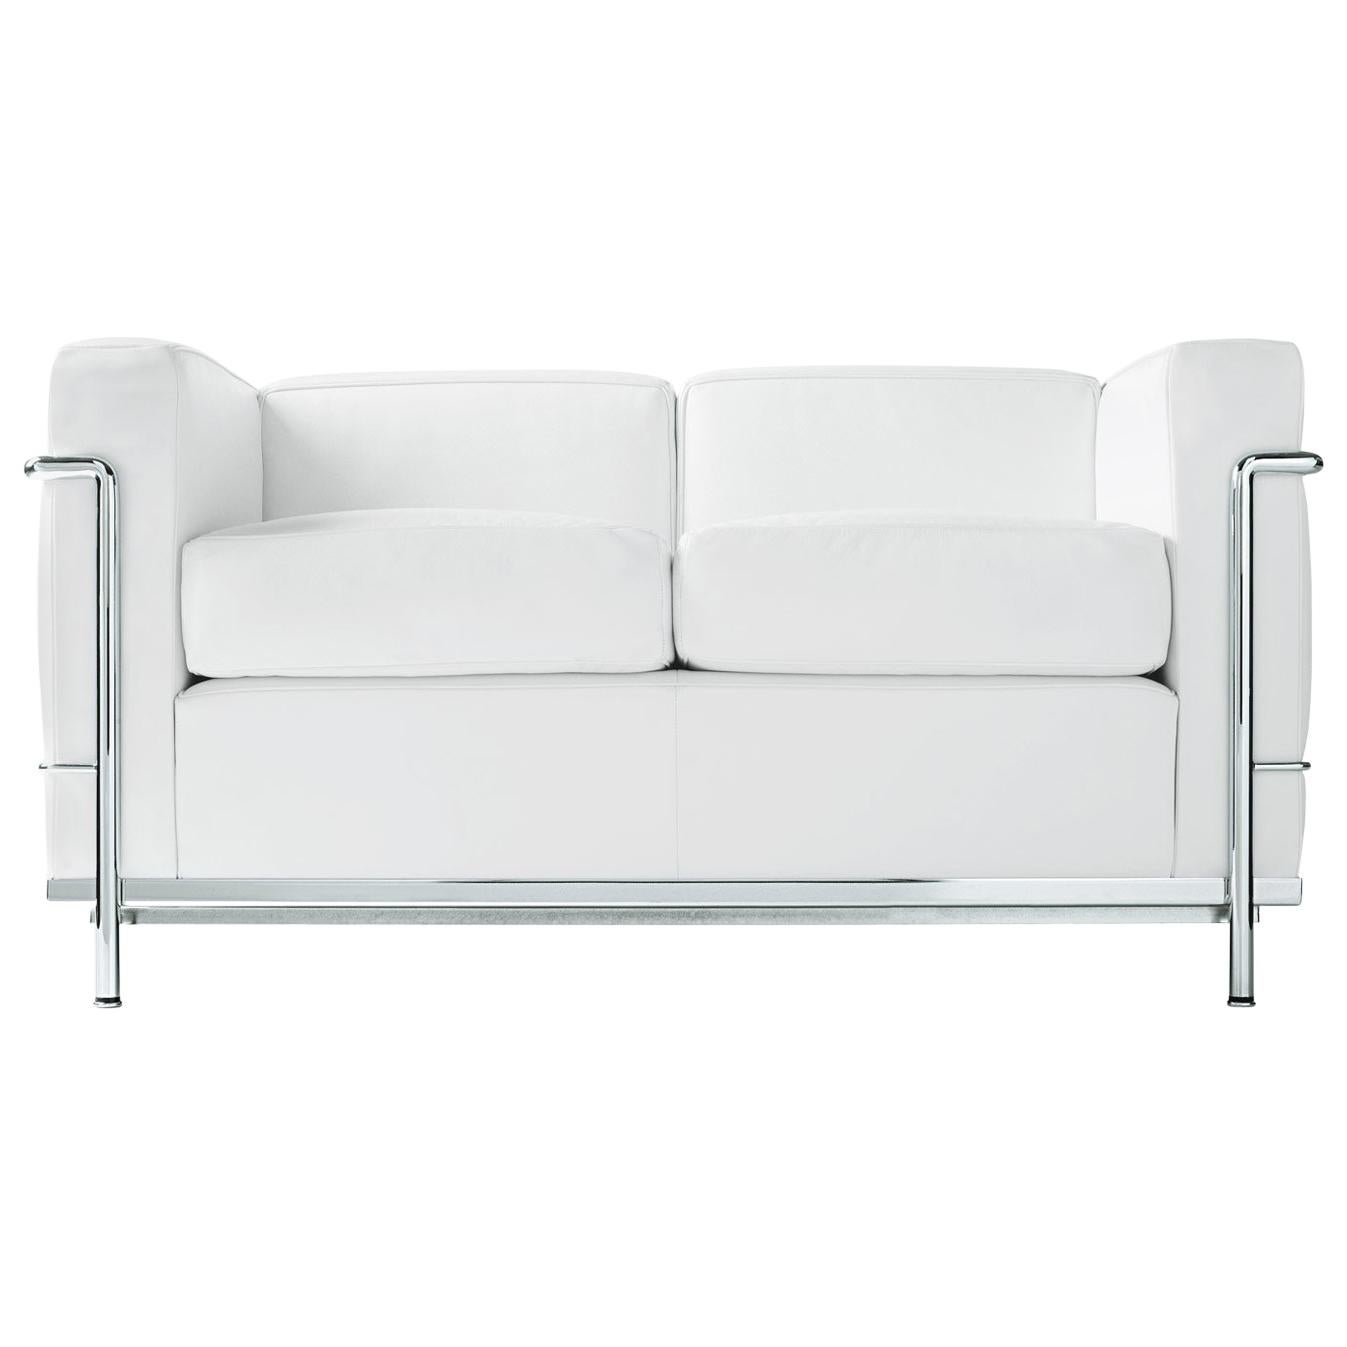 Le Corbusier, Pierre Jeanneret, Charlotte Perriand LC2 Divano Two-Seat Sofa